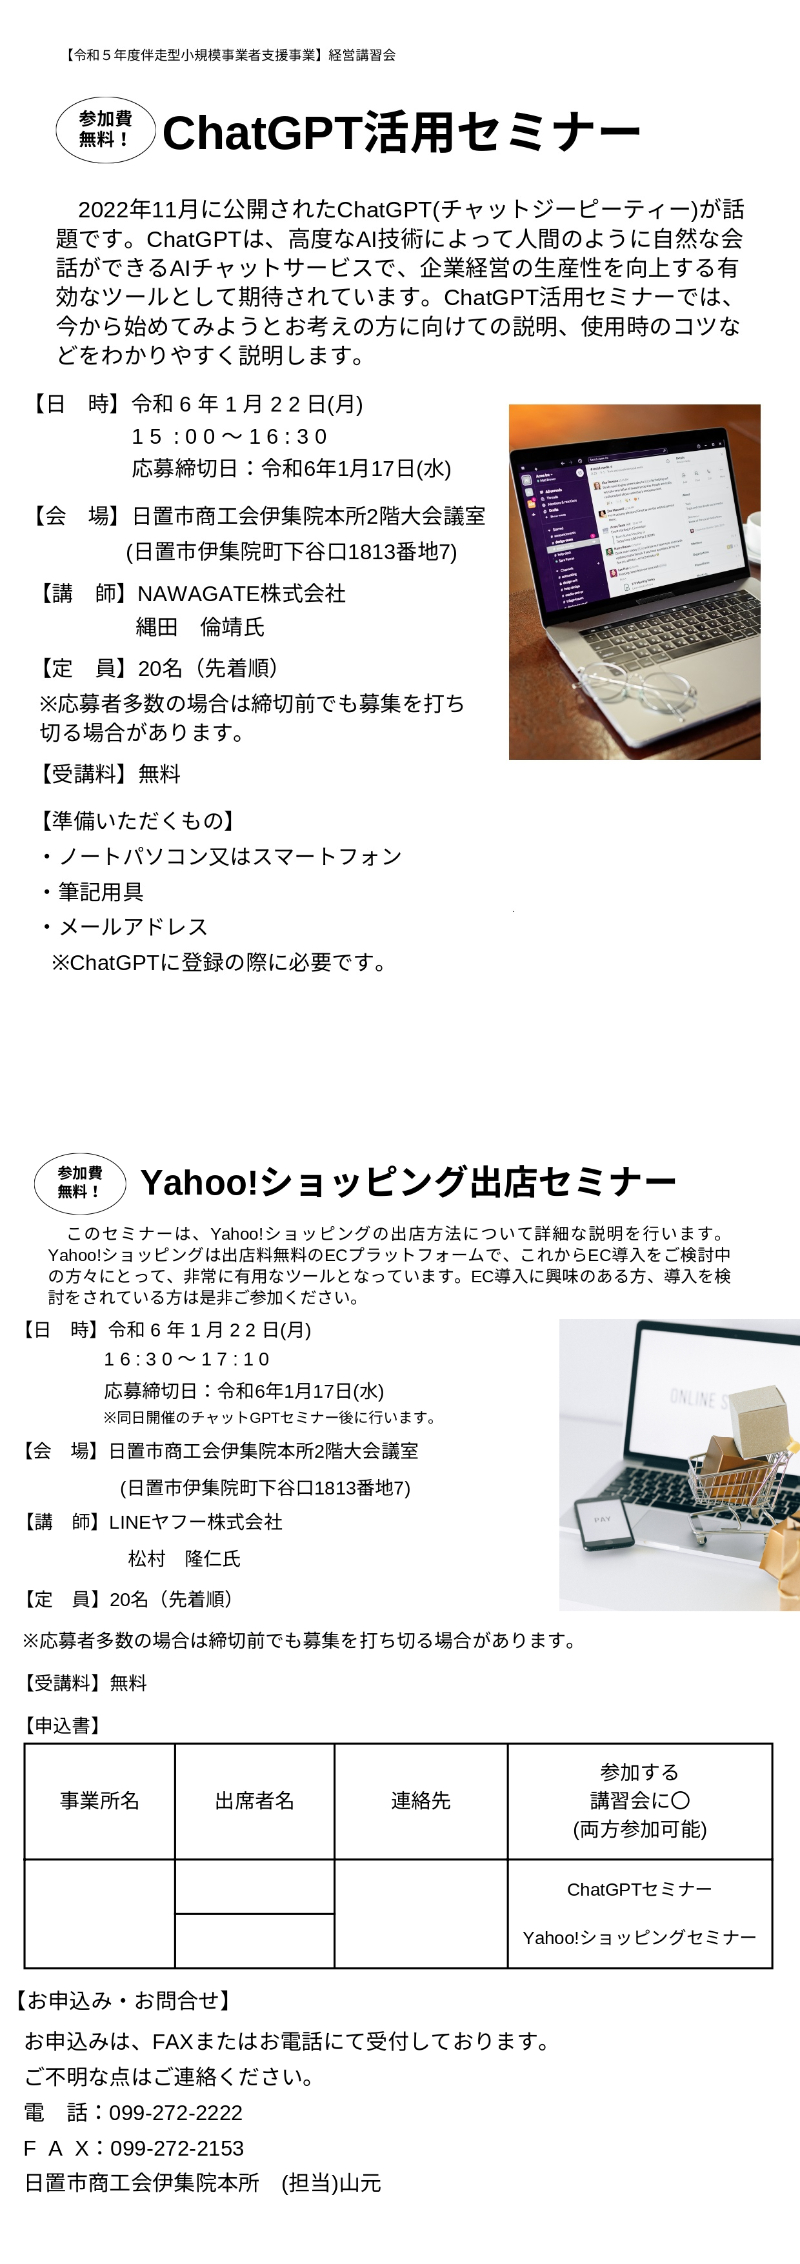 【商工会員向け】ChatGPT活用セミナー・Yahoo!ショッピング出店セミナーのご案内